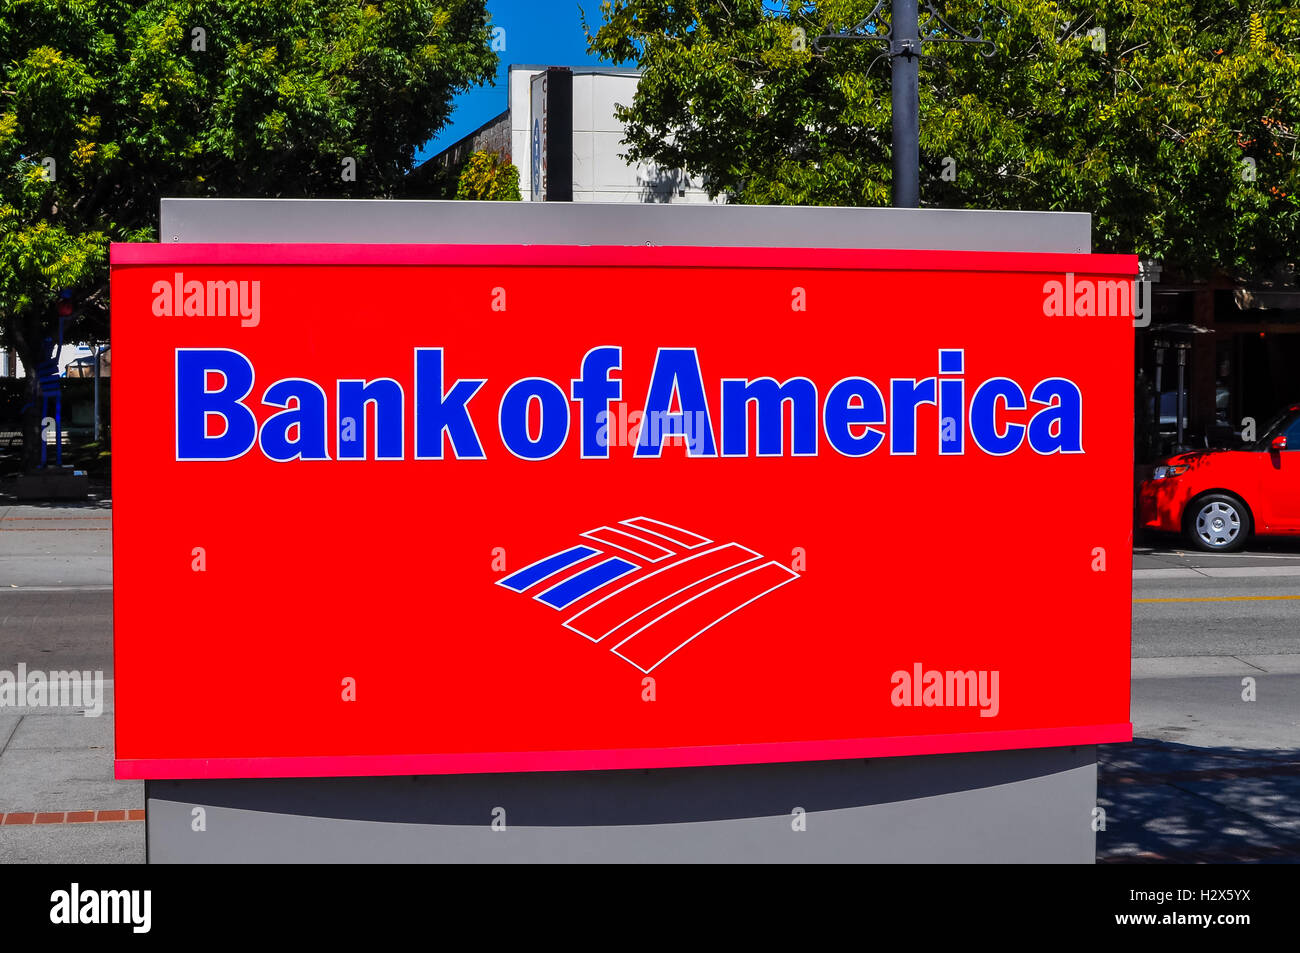 San Carlos, CA - 13. August 2016: Bank of America - ein US-Konzern Banken- und Finanzsektor services Corporation. Stockfoto